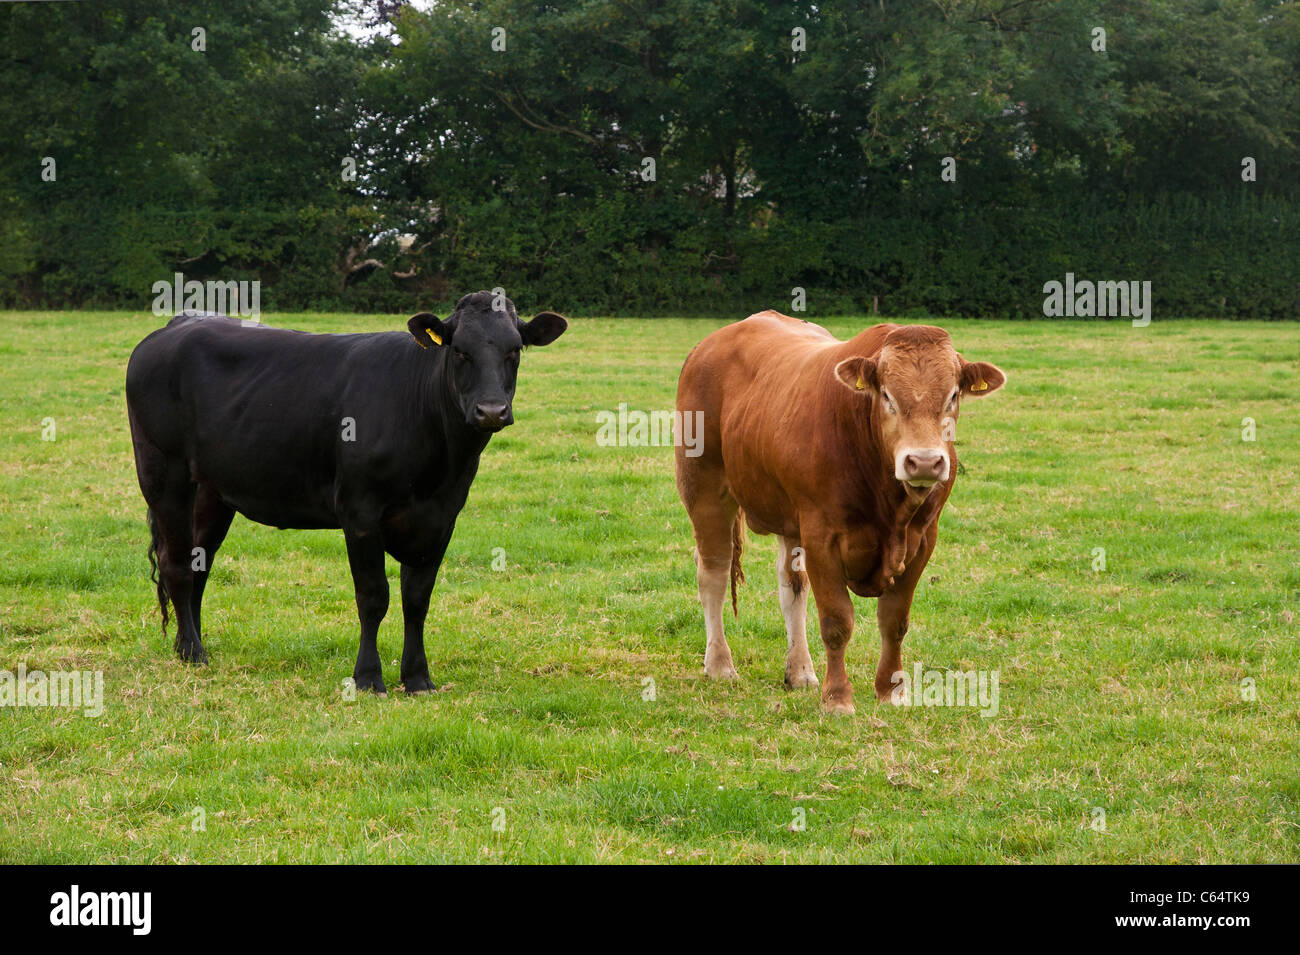 Una vaca y una negra/roja jengibre/Chestnut bull se encuentran una junto a la otra en un campo. Estos son una raza de carne Foto de stock